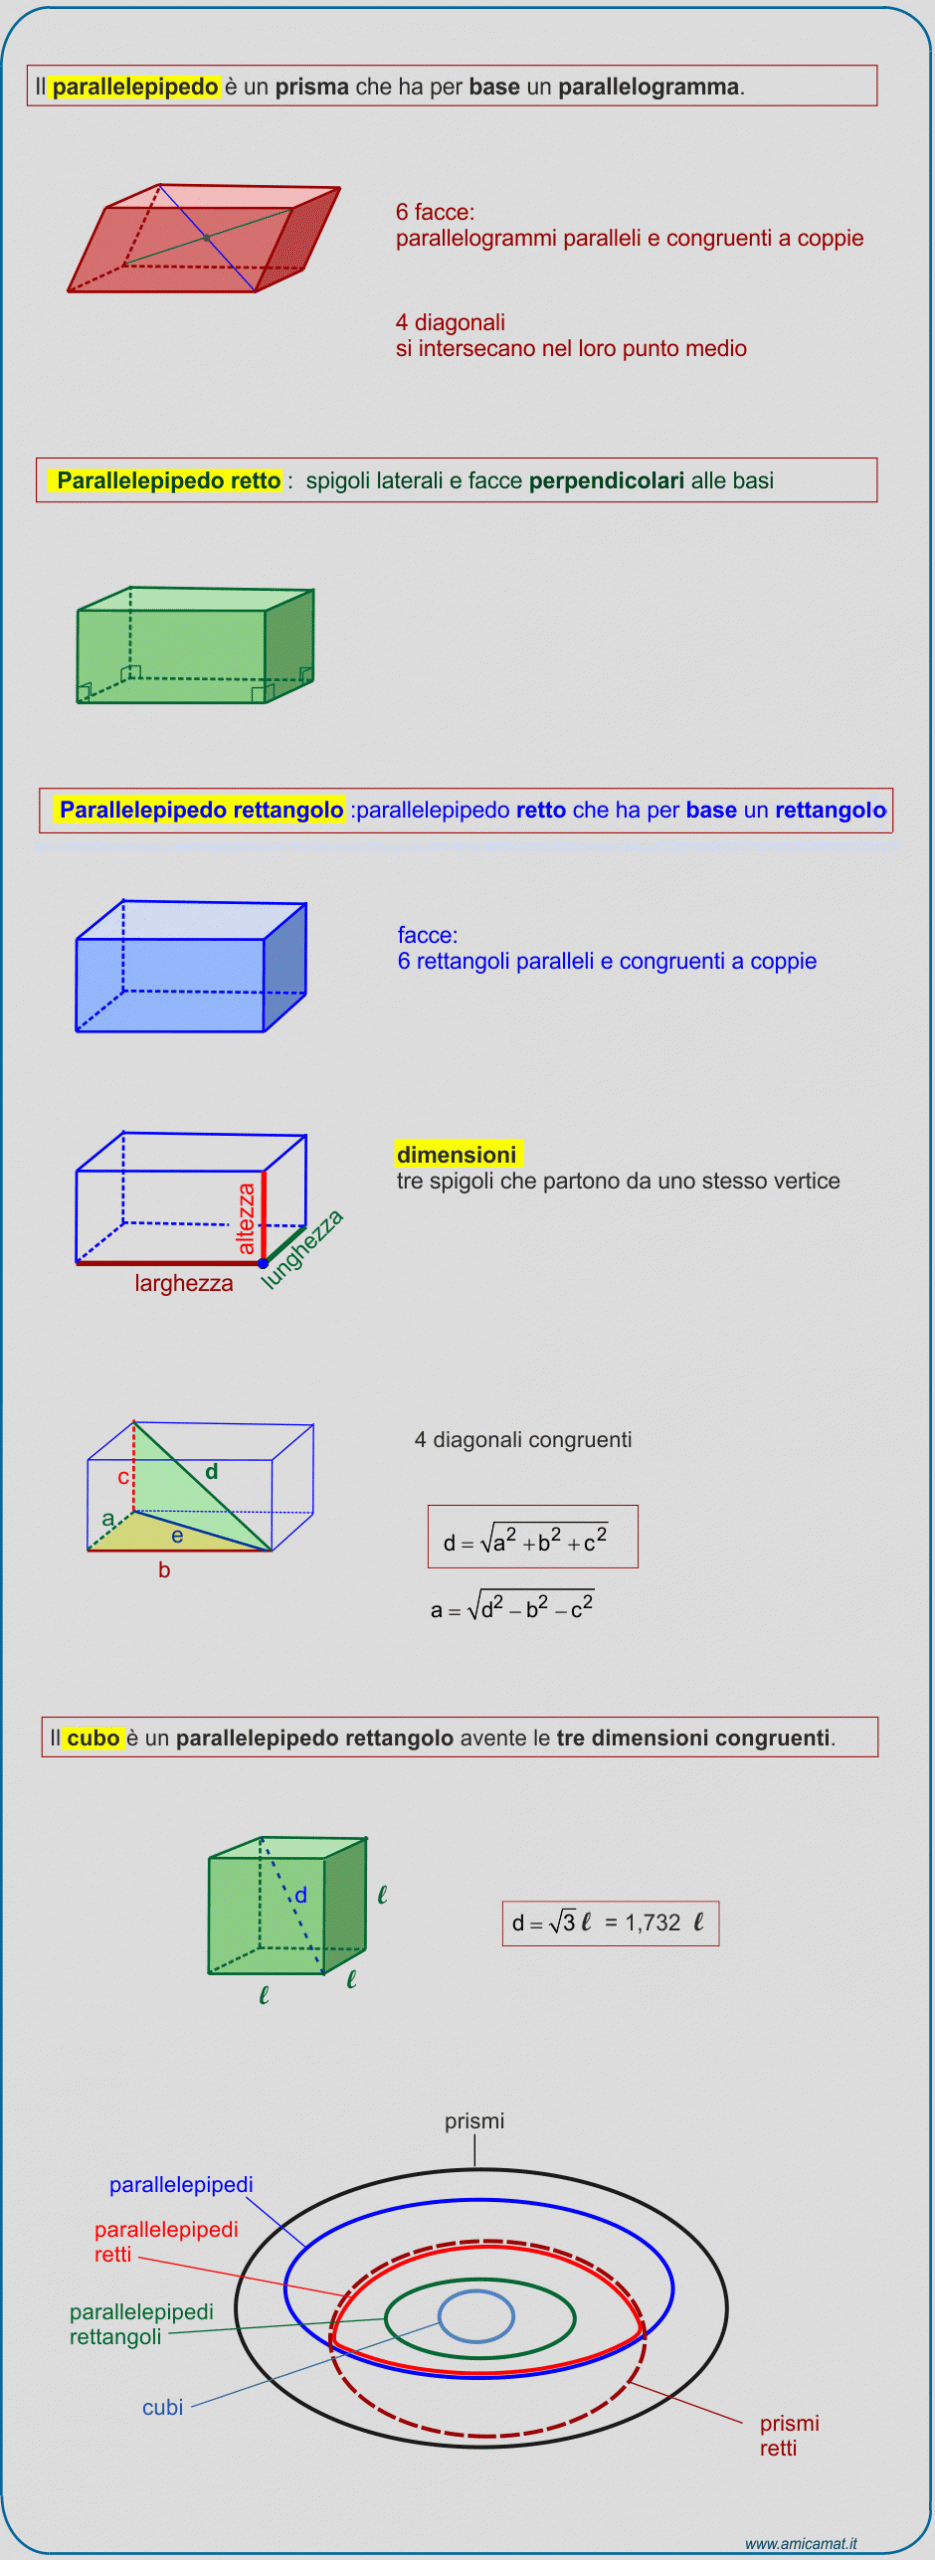 Quali sono le tre dimensioni del parallelepipedo rettangolo